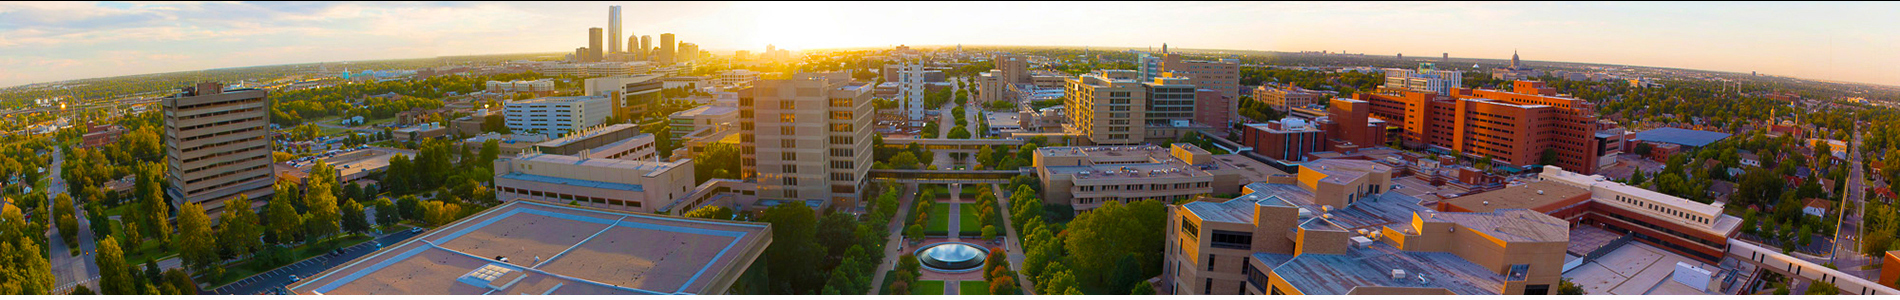 OUHSC Campus Views